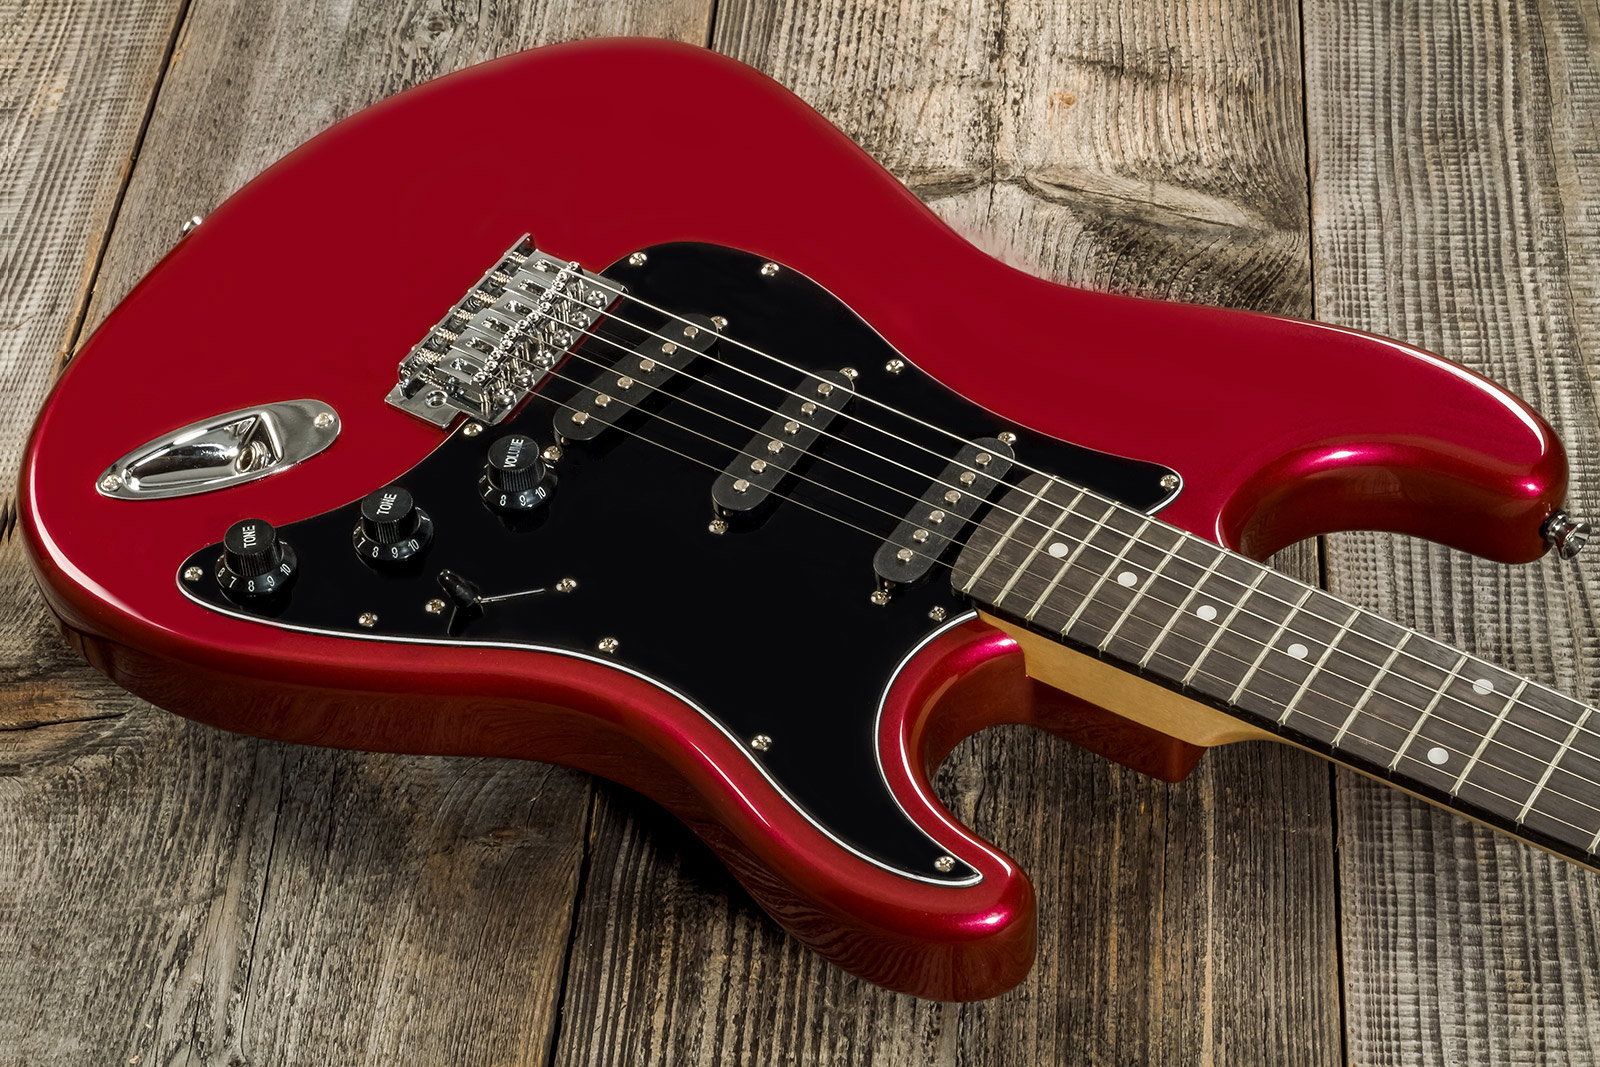 Eastone Str70t 3s Trem Pur - Dark Red - E-Gitarre in Str-Form - Variation 7